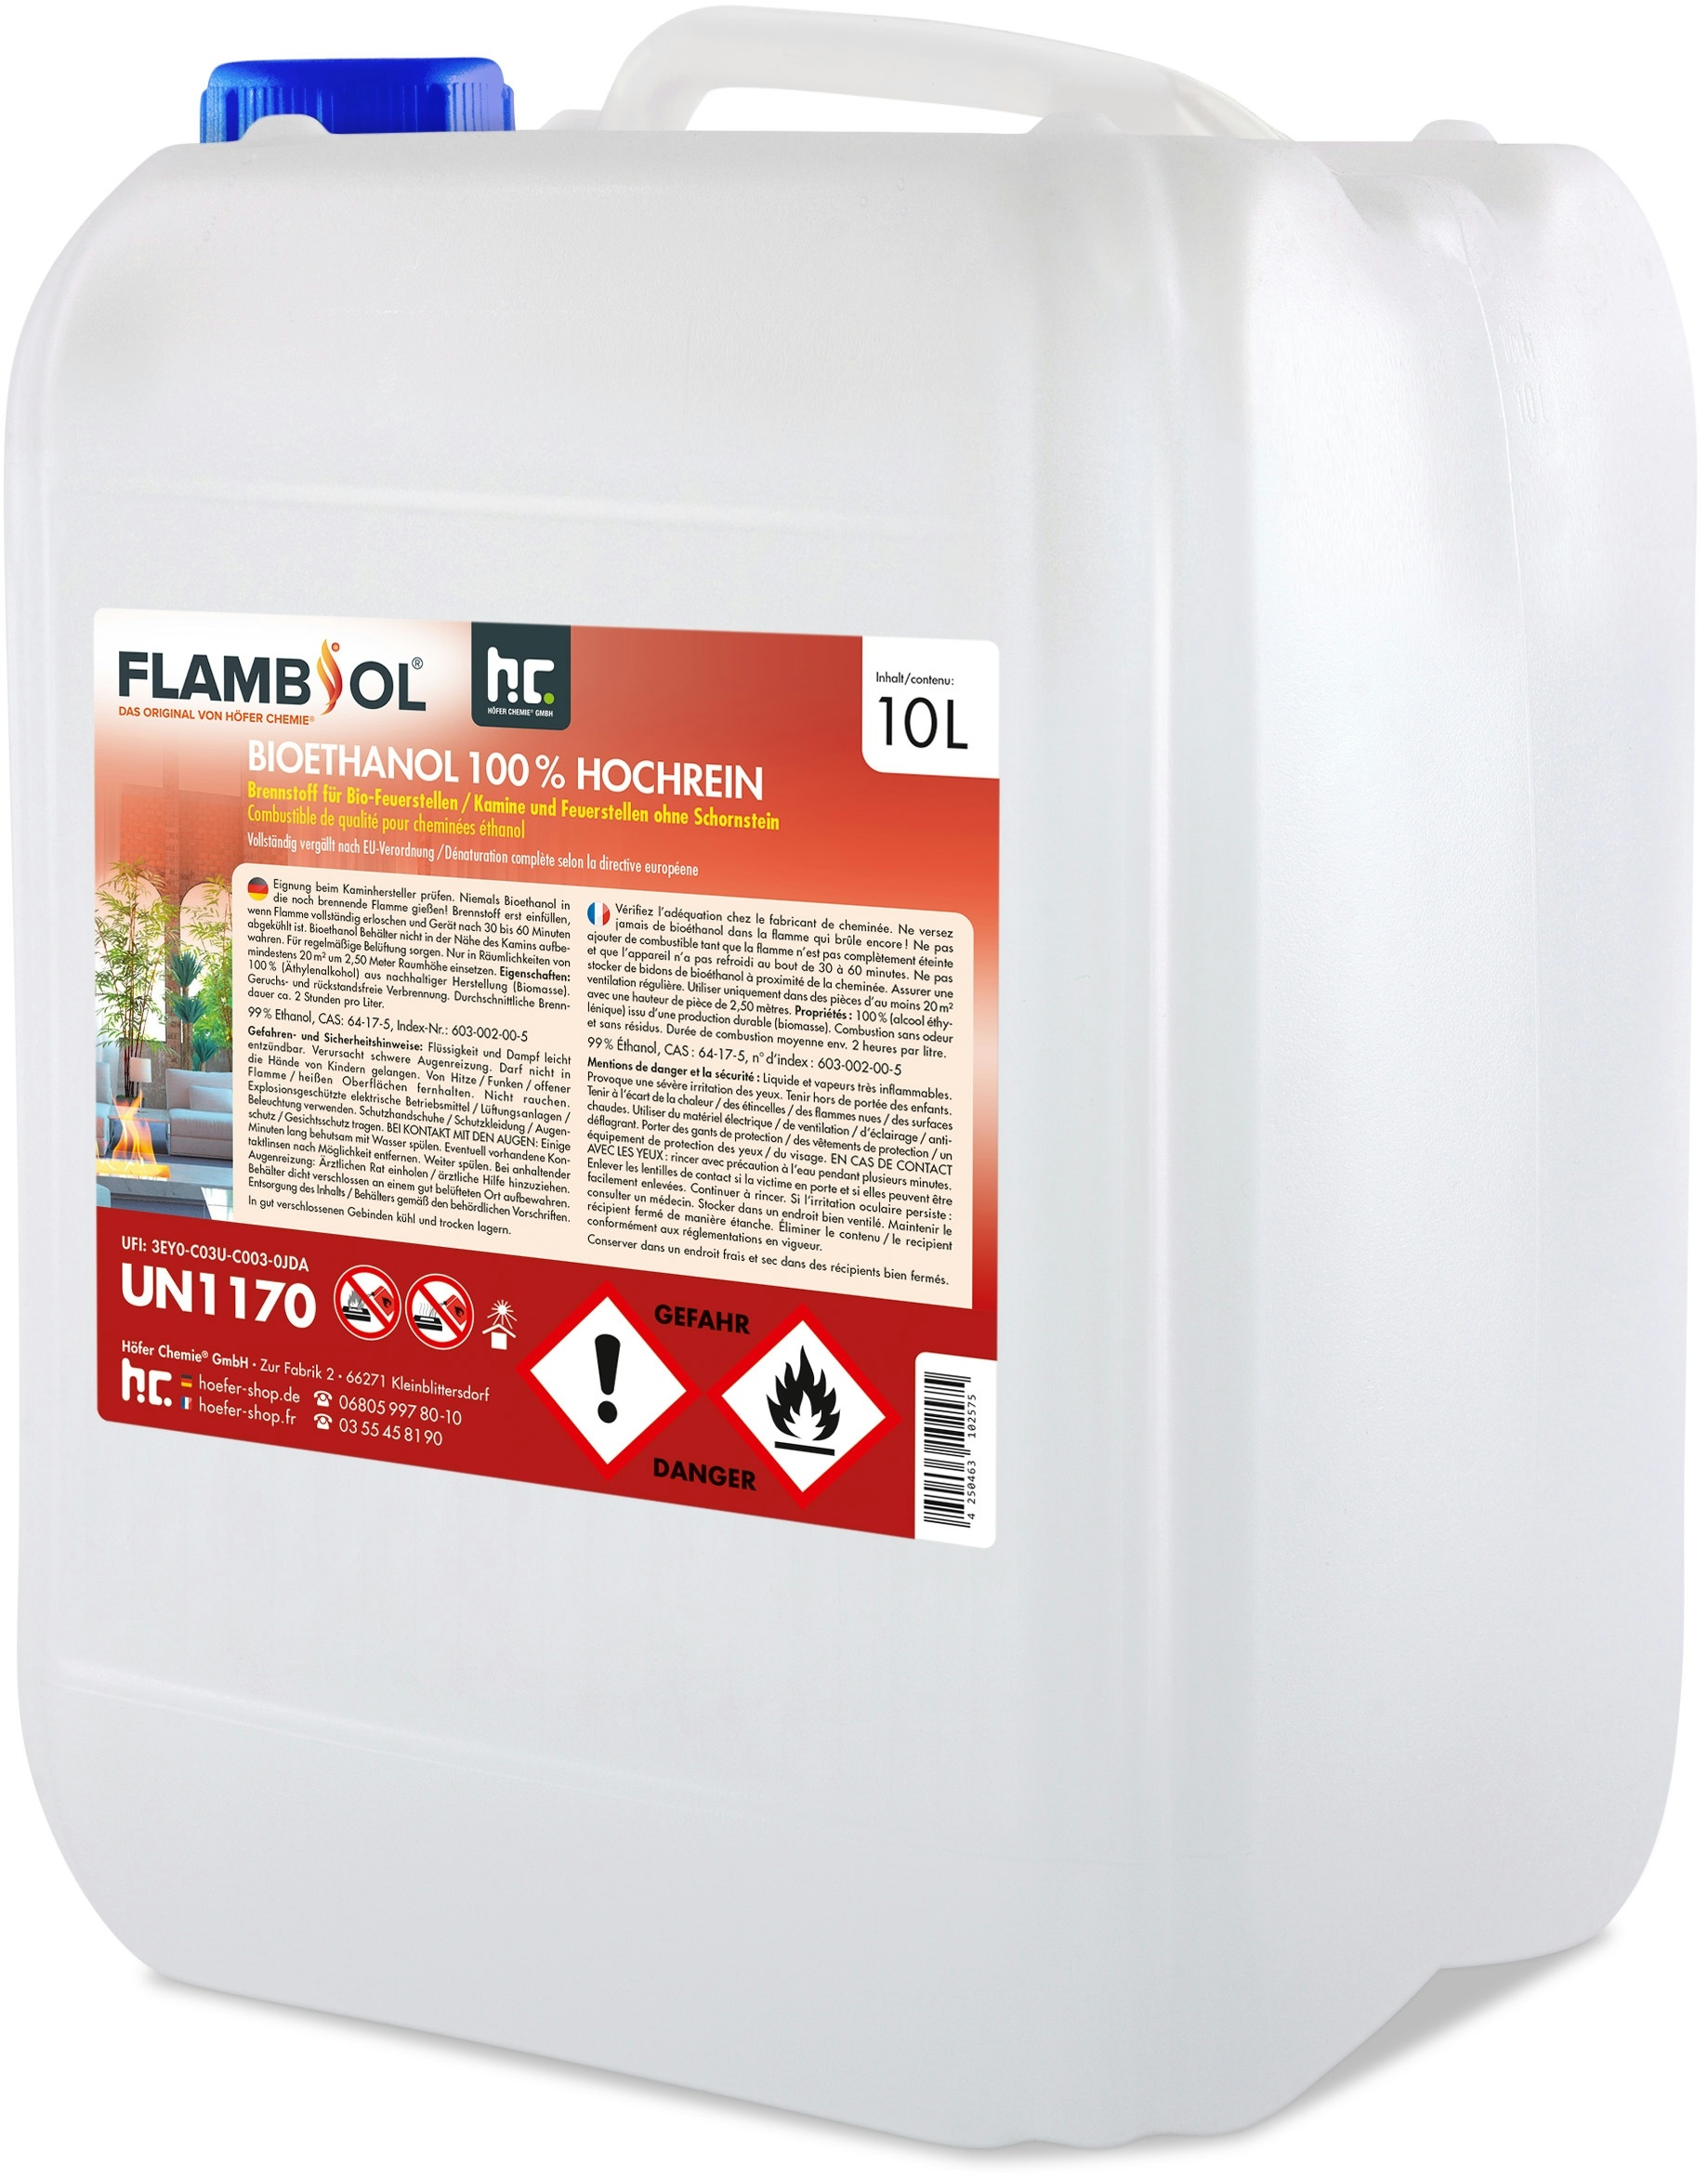 1 x 10 Liter FLAMBIOL® Bioethanol Hochrein 100 % saubere und geruchsfreie Verbrennung